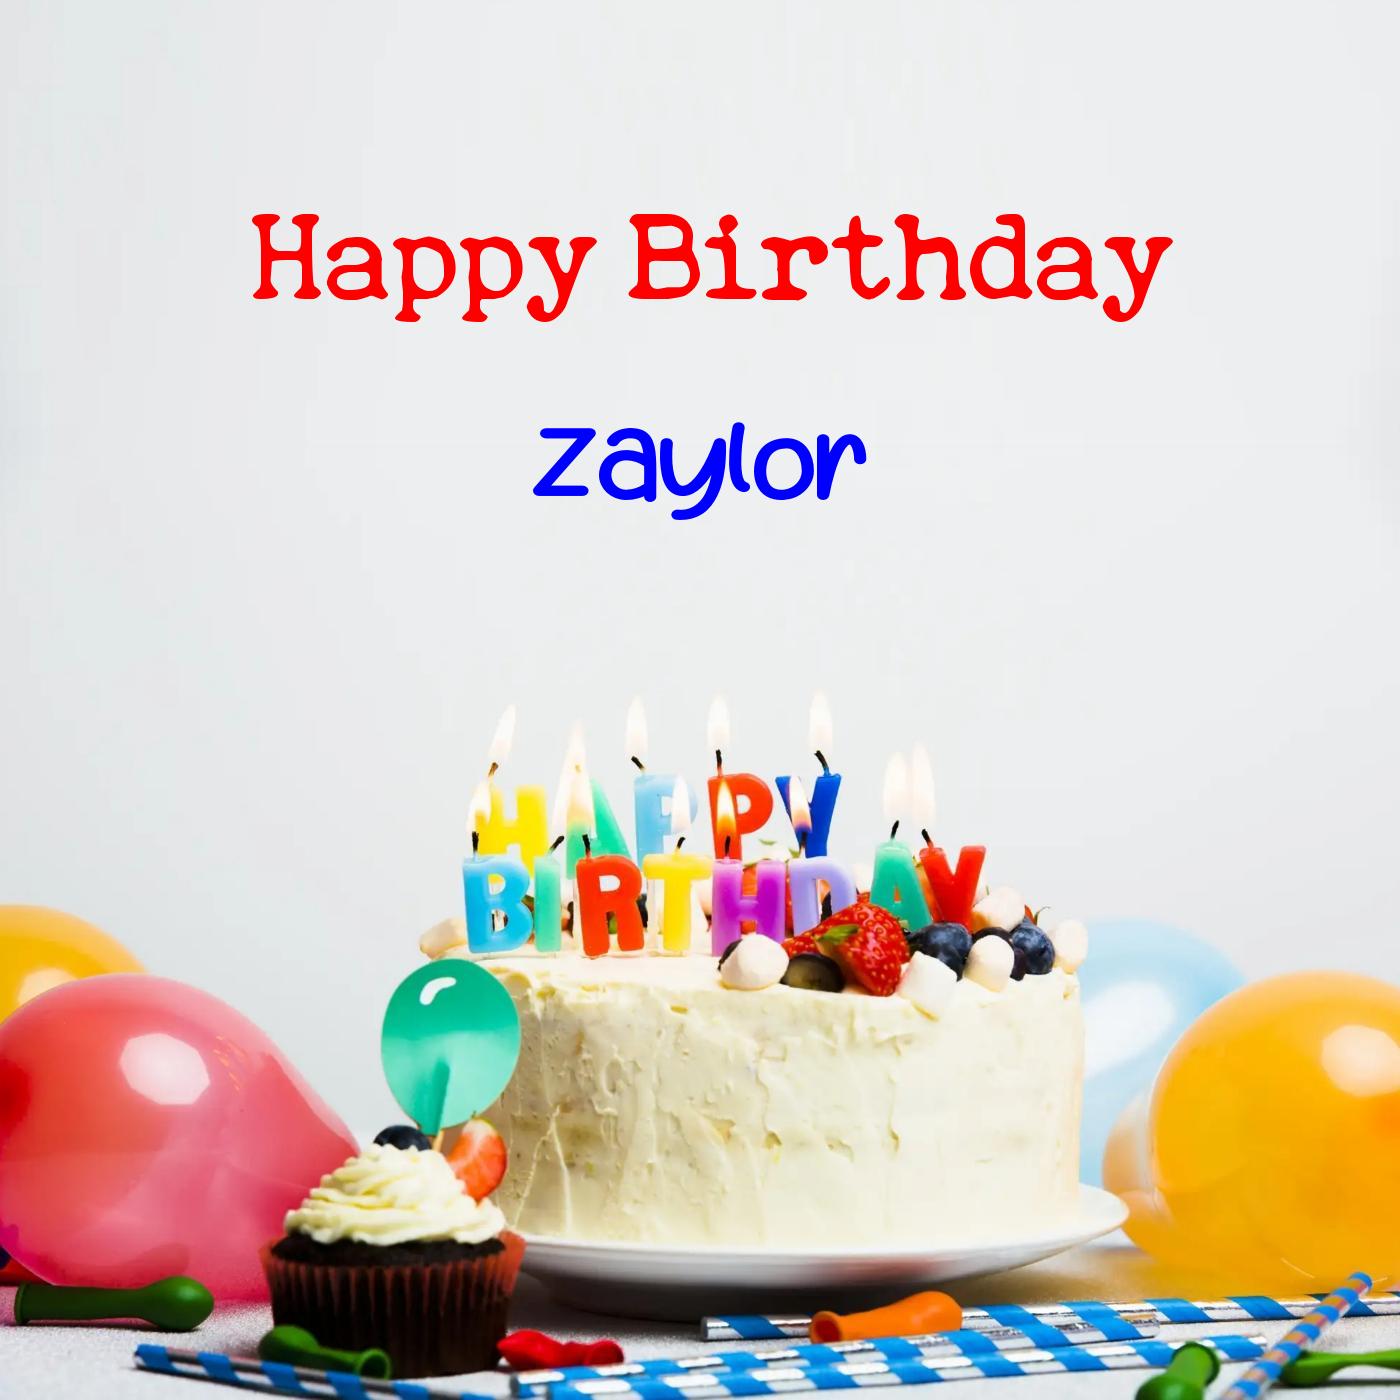 Happy Birthday Zaylor Cake Balloons Card